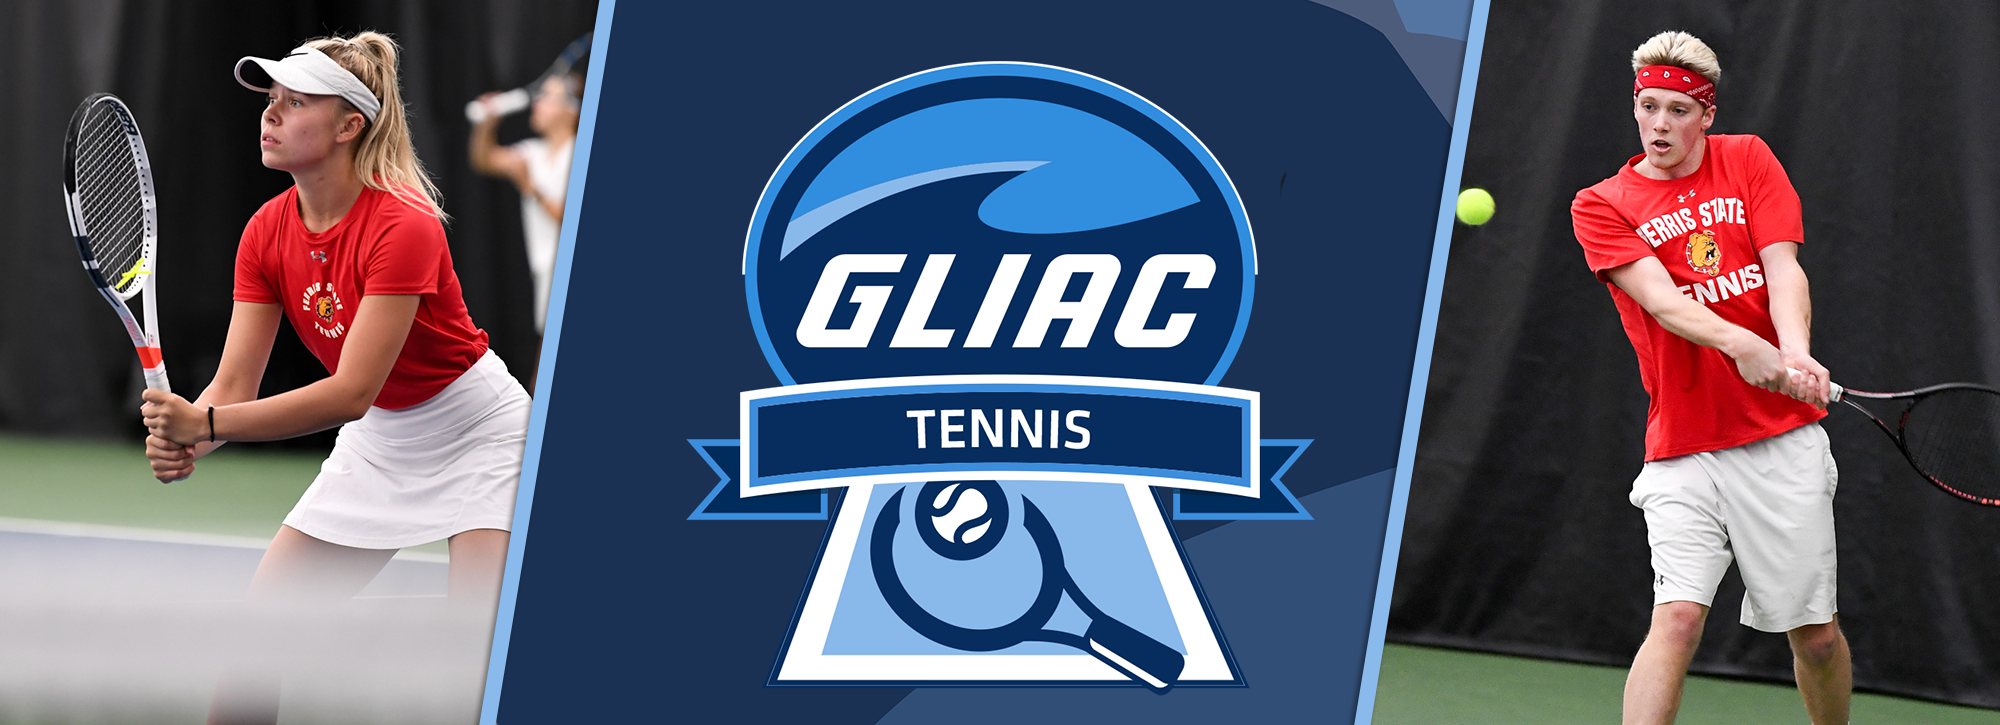 FSU's Klak and Mader Claim GLIAC Tennis Weekly Honors